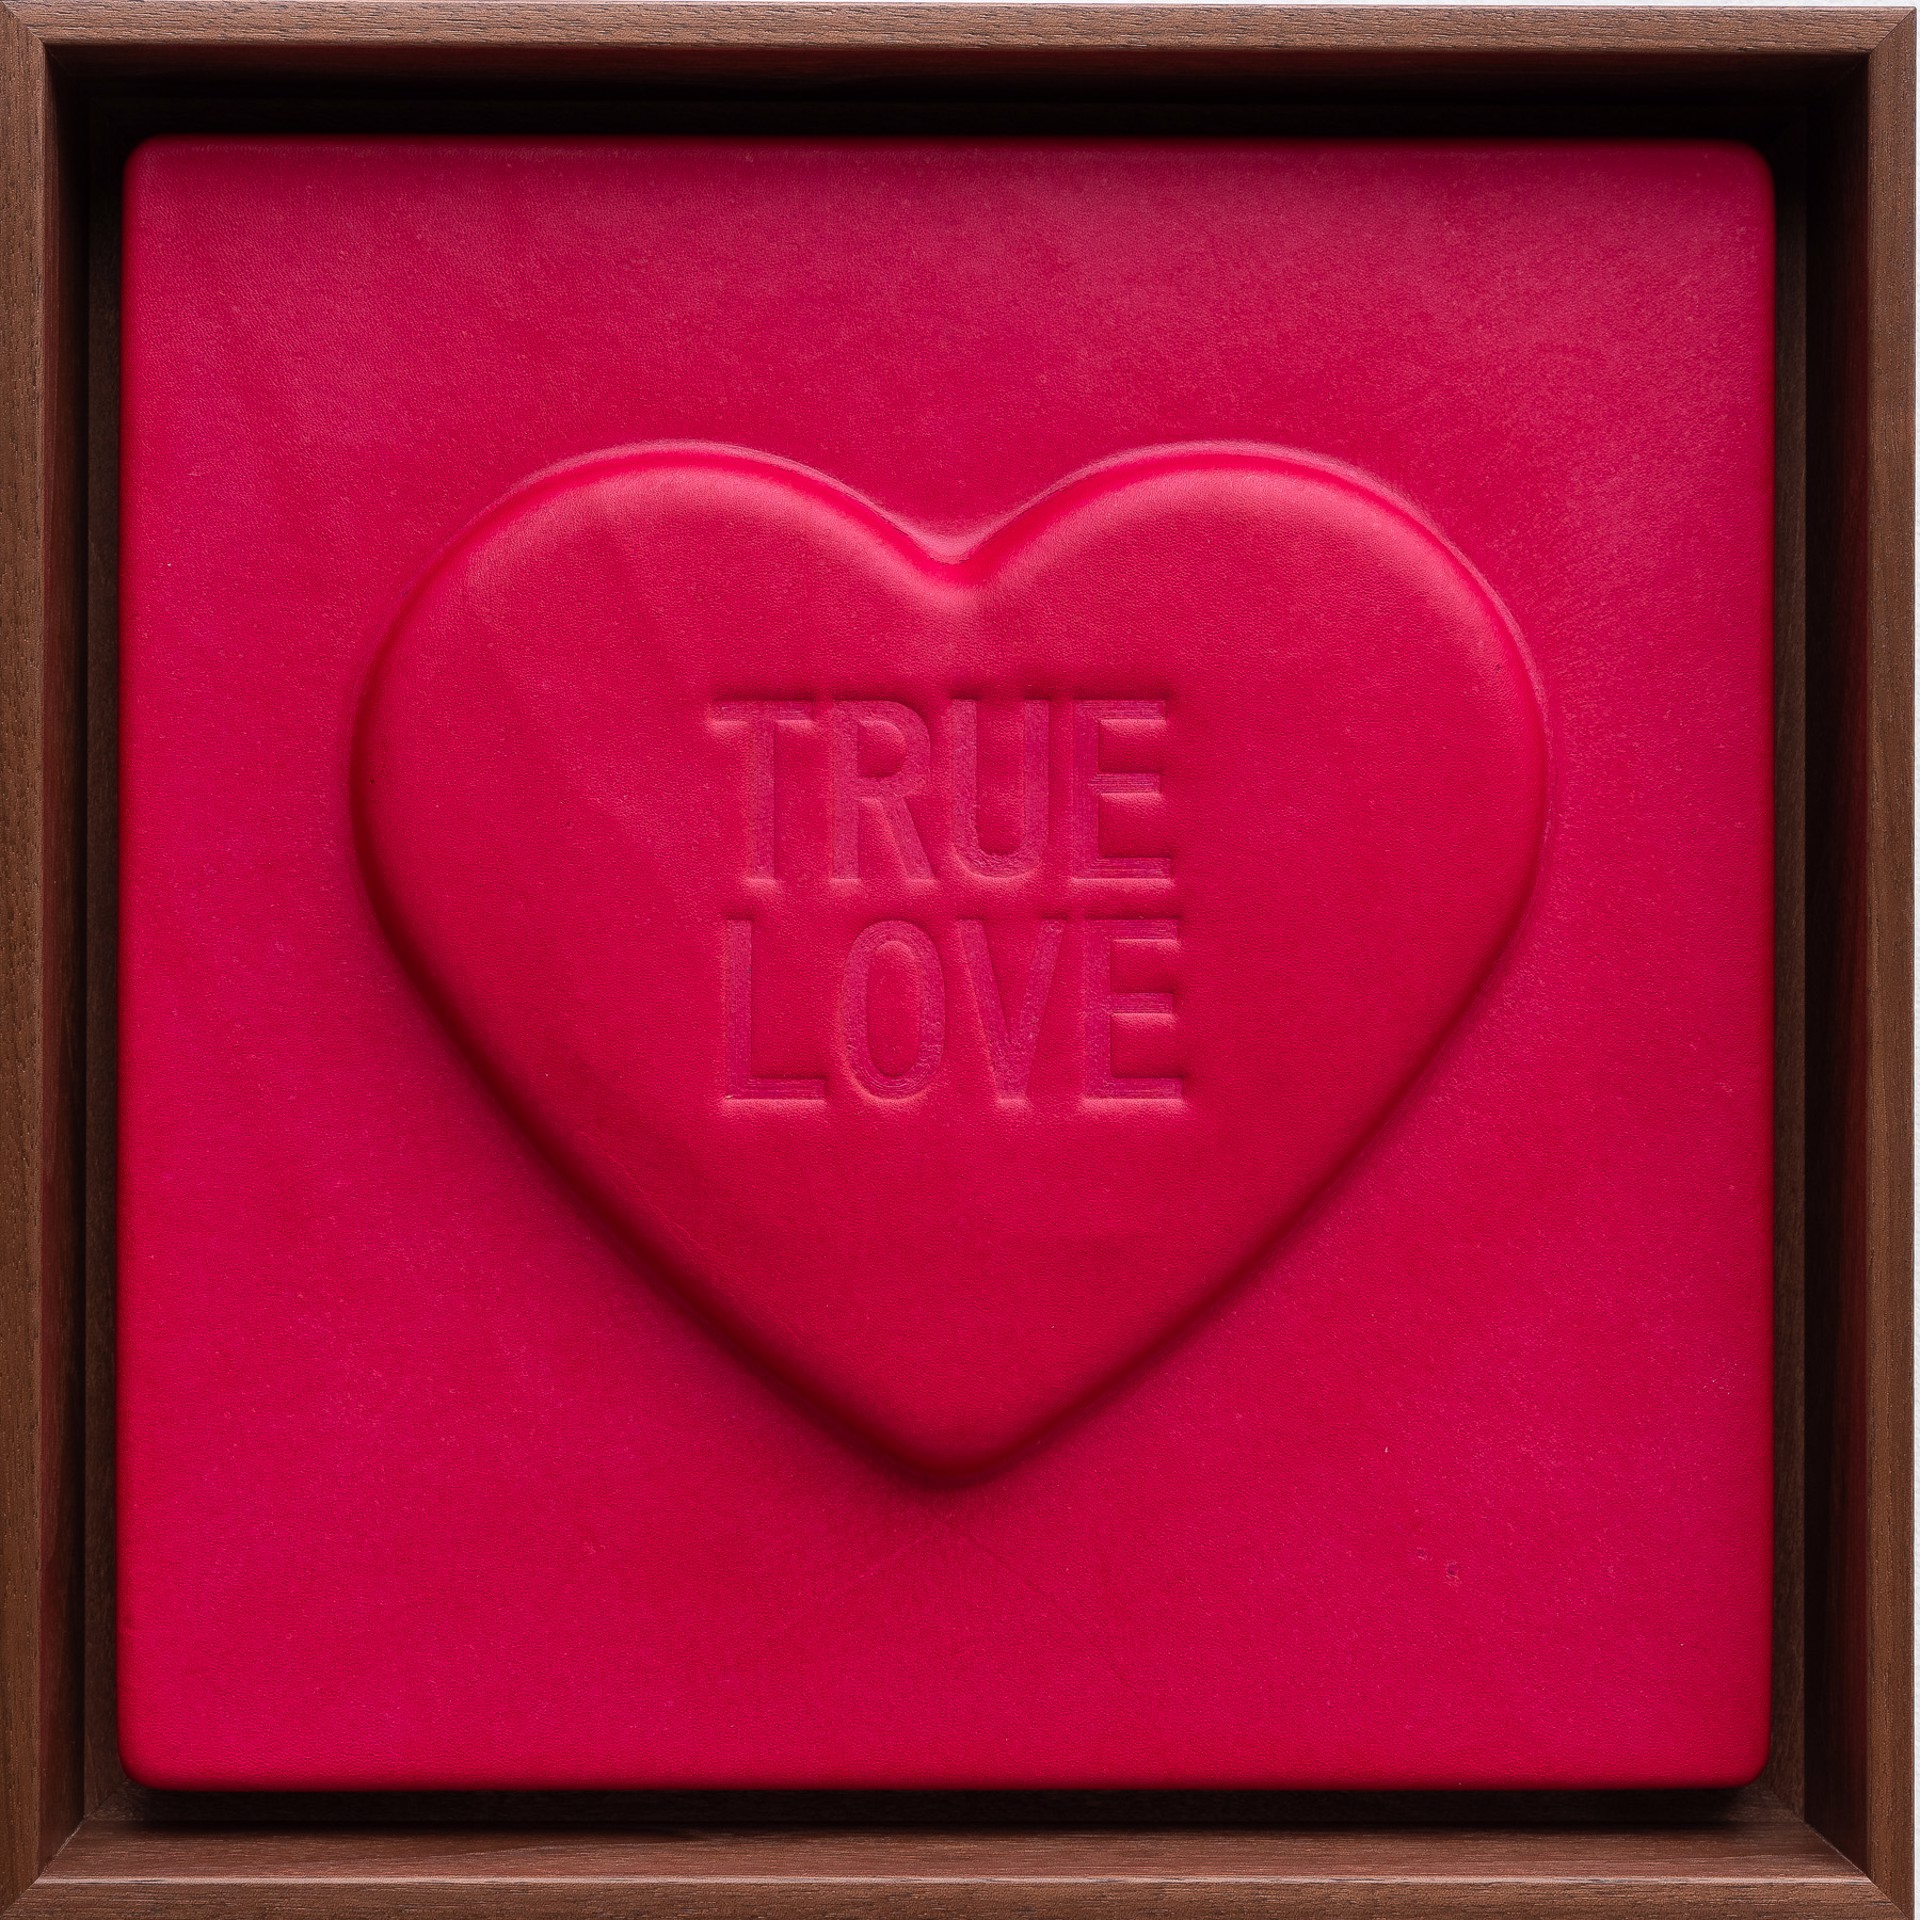 'TRUE LOVE' - Sweetheart series by Mx. Hyde